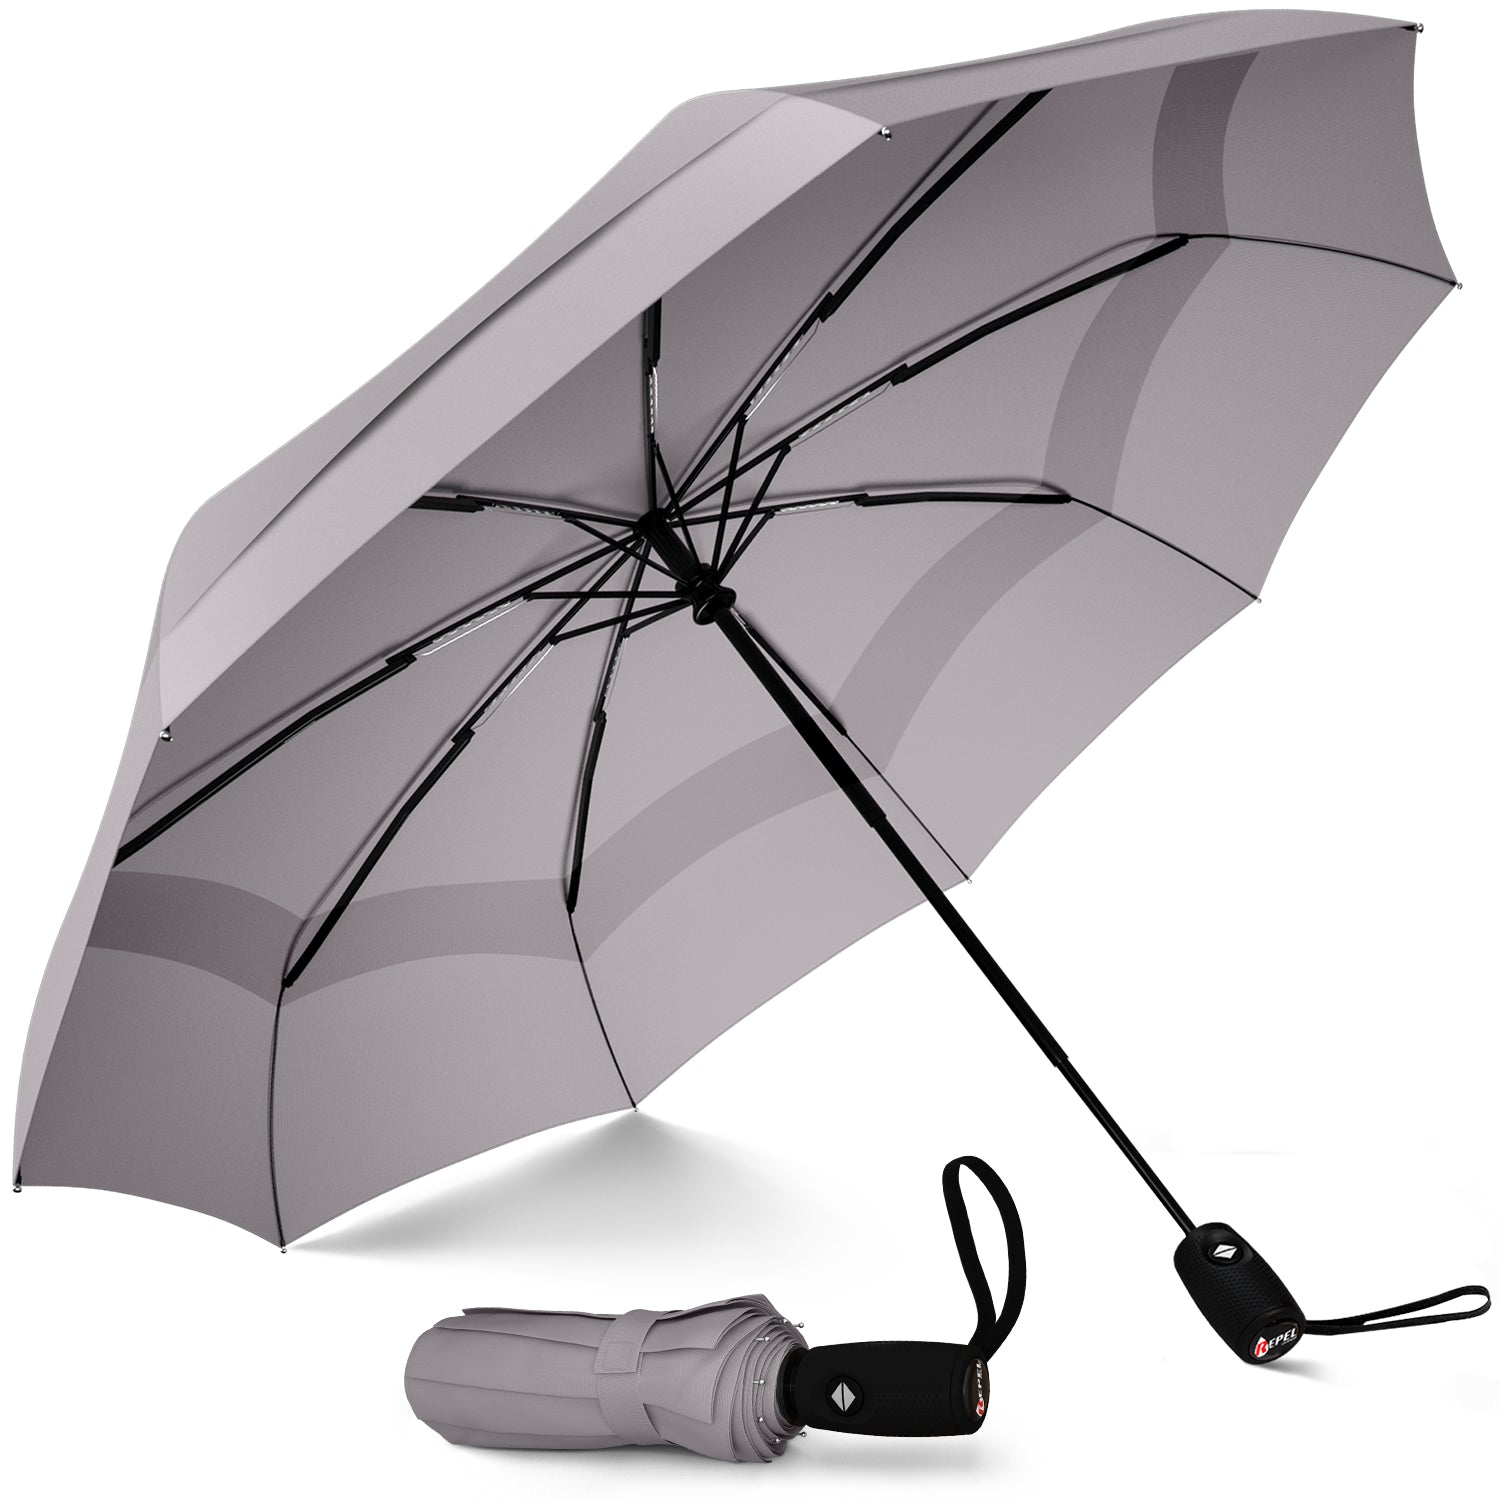 repel windproof travel umbrella review